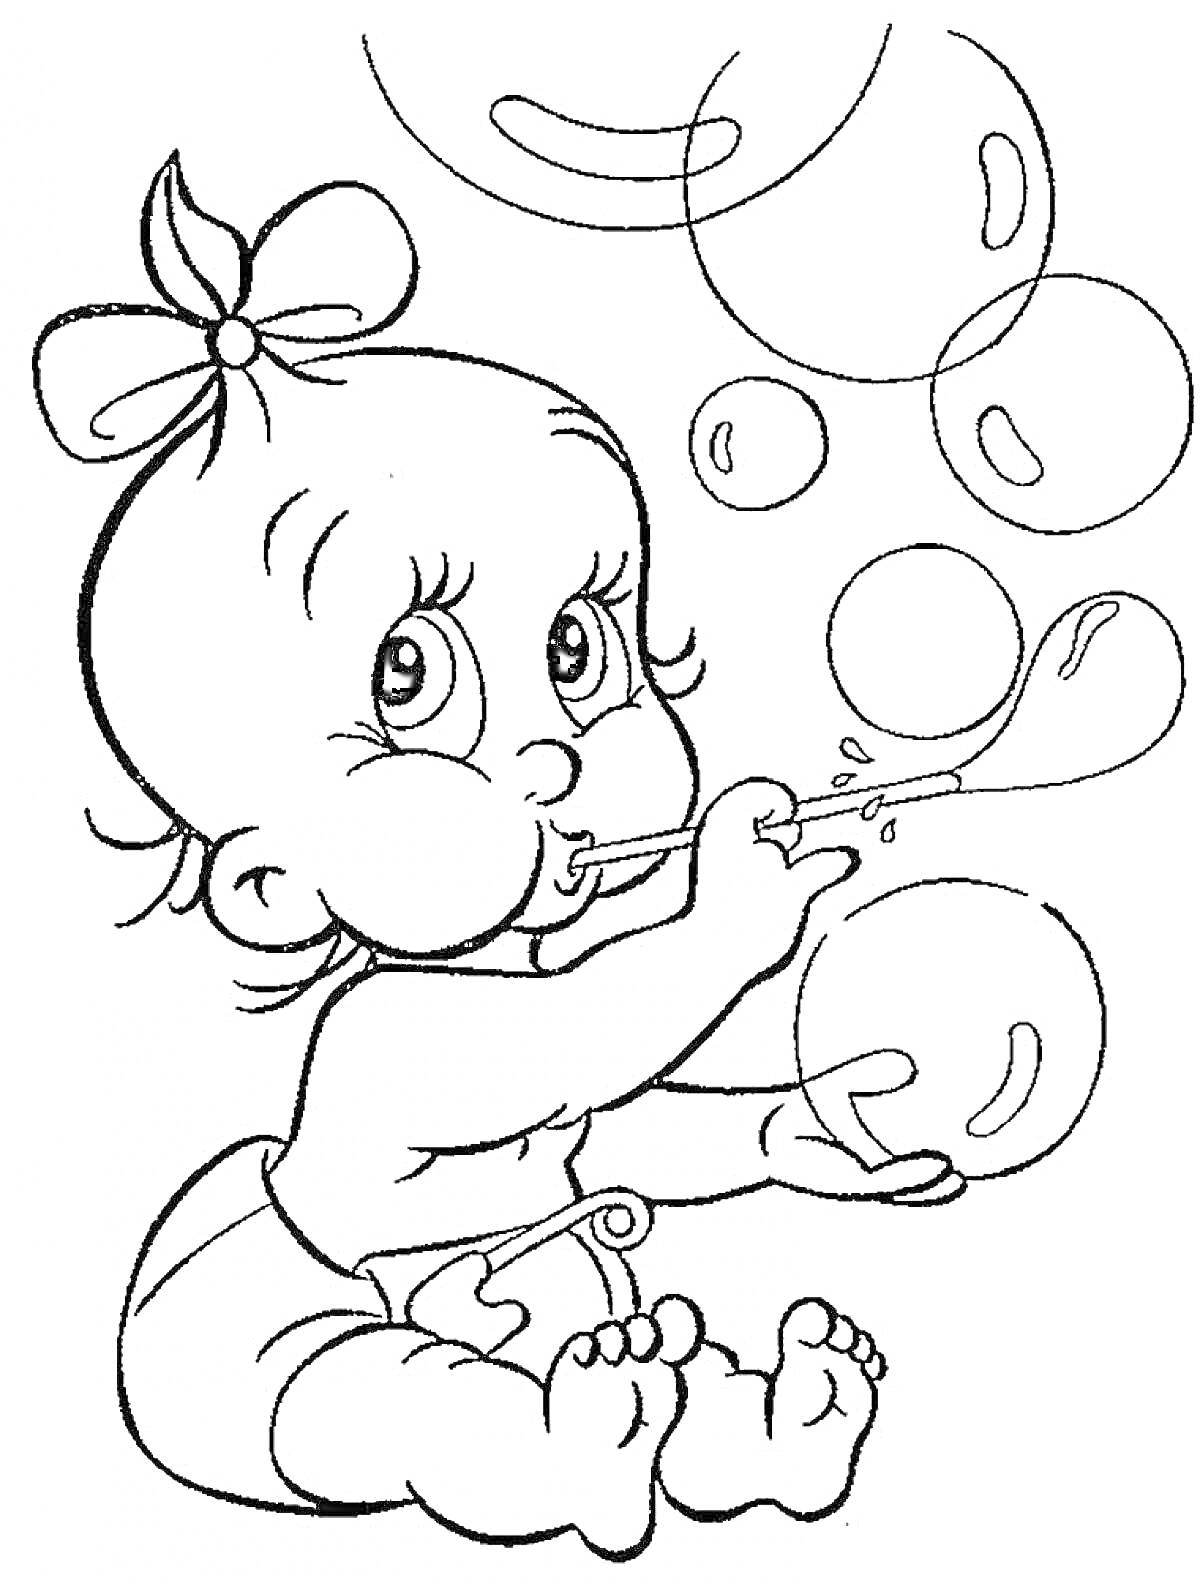 Ребёнок с бантиком, который дует мыльные пузыри